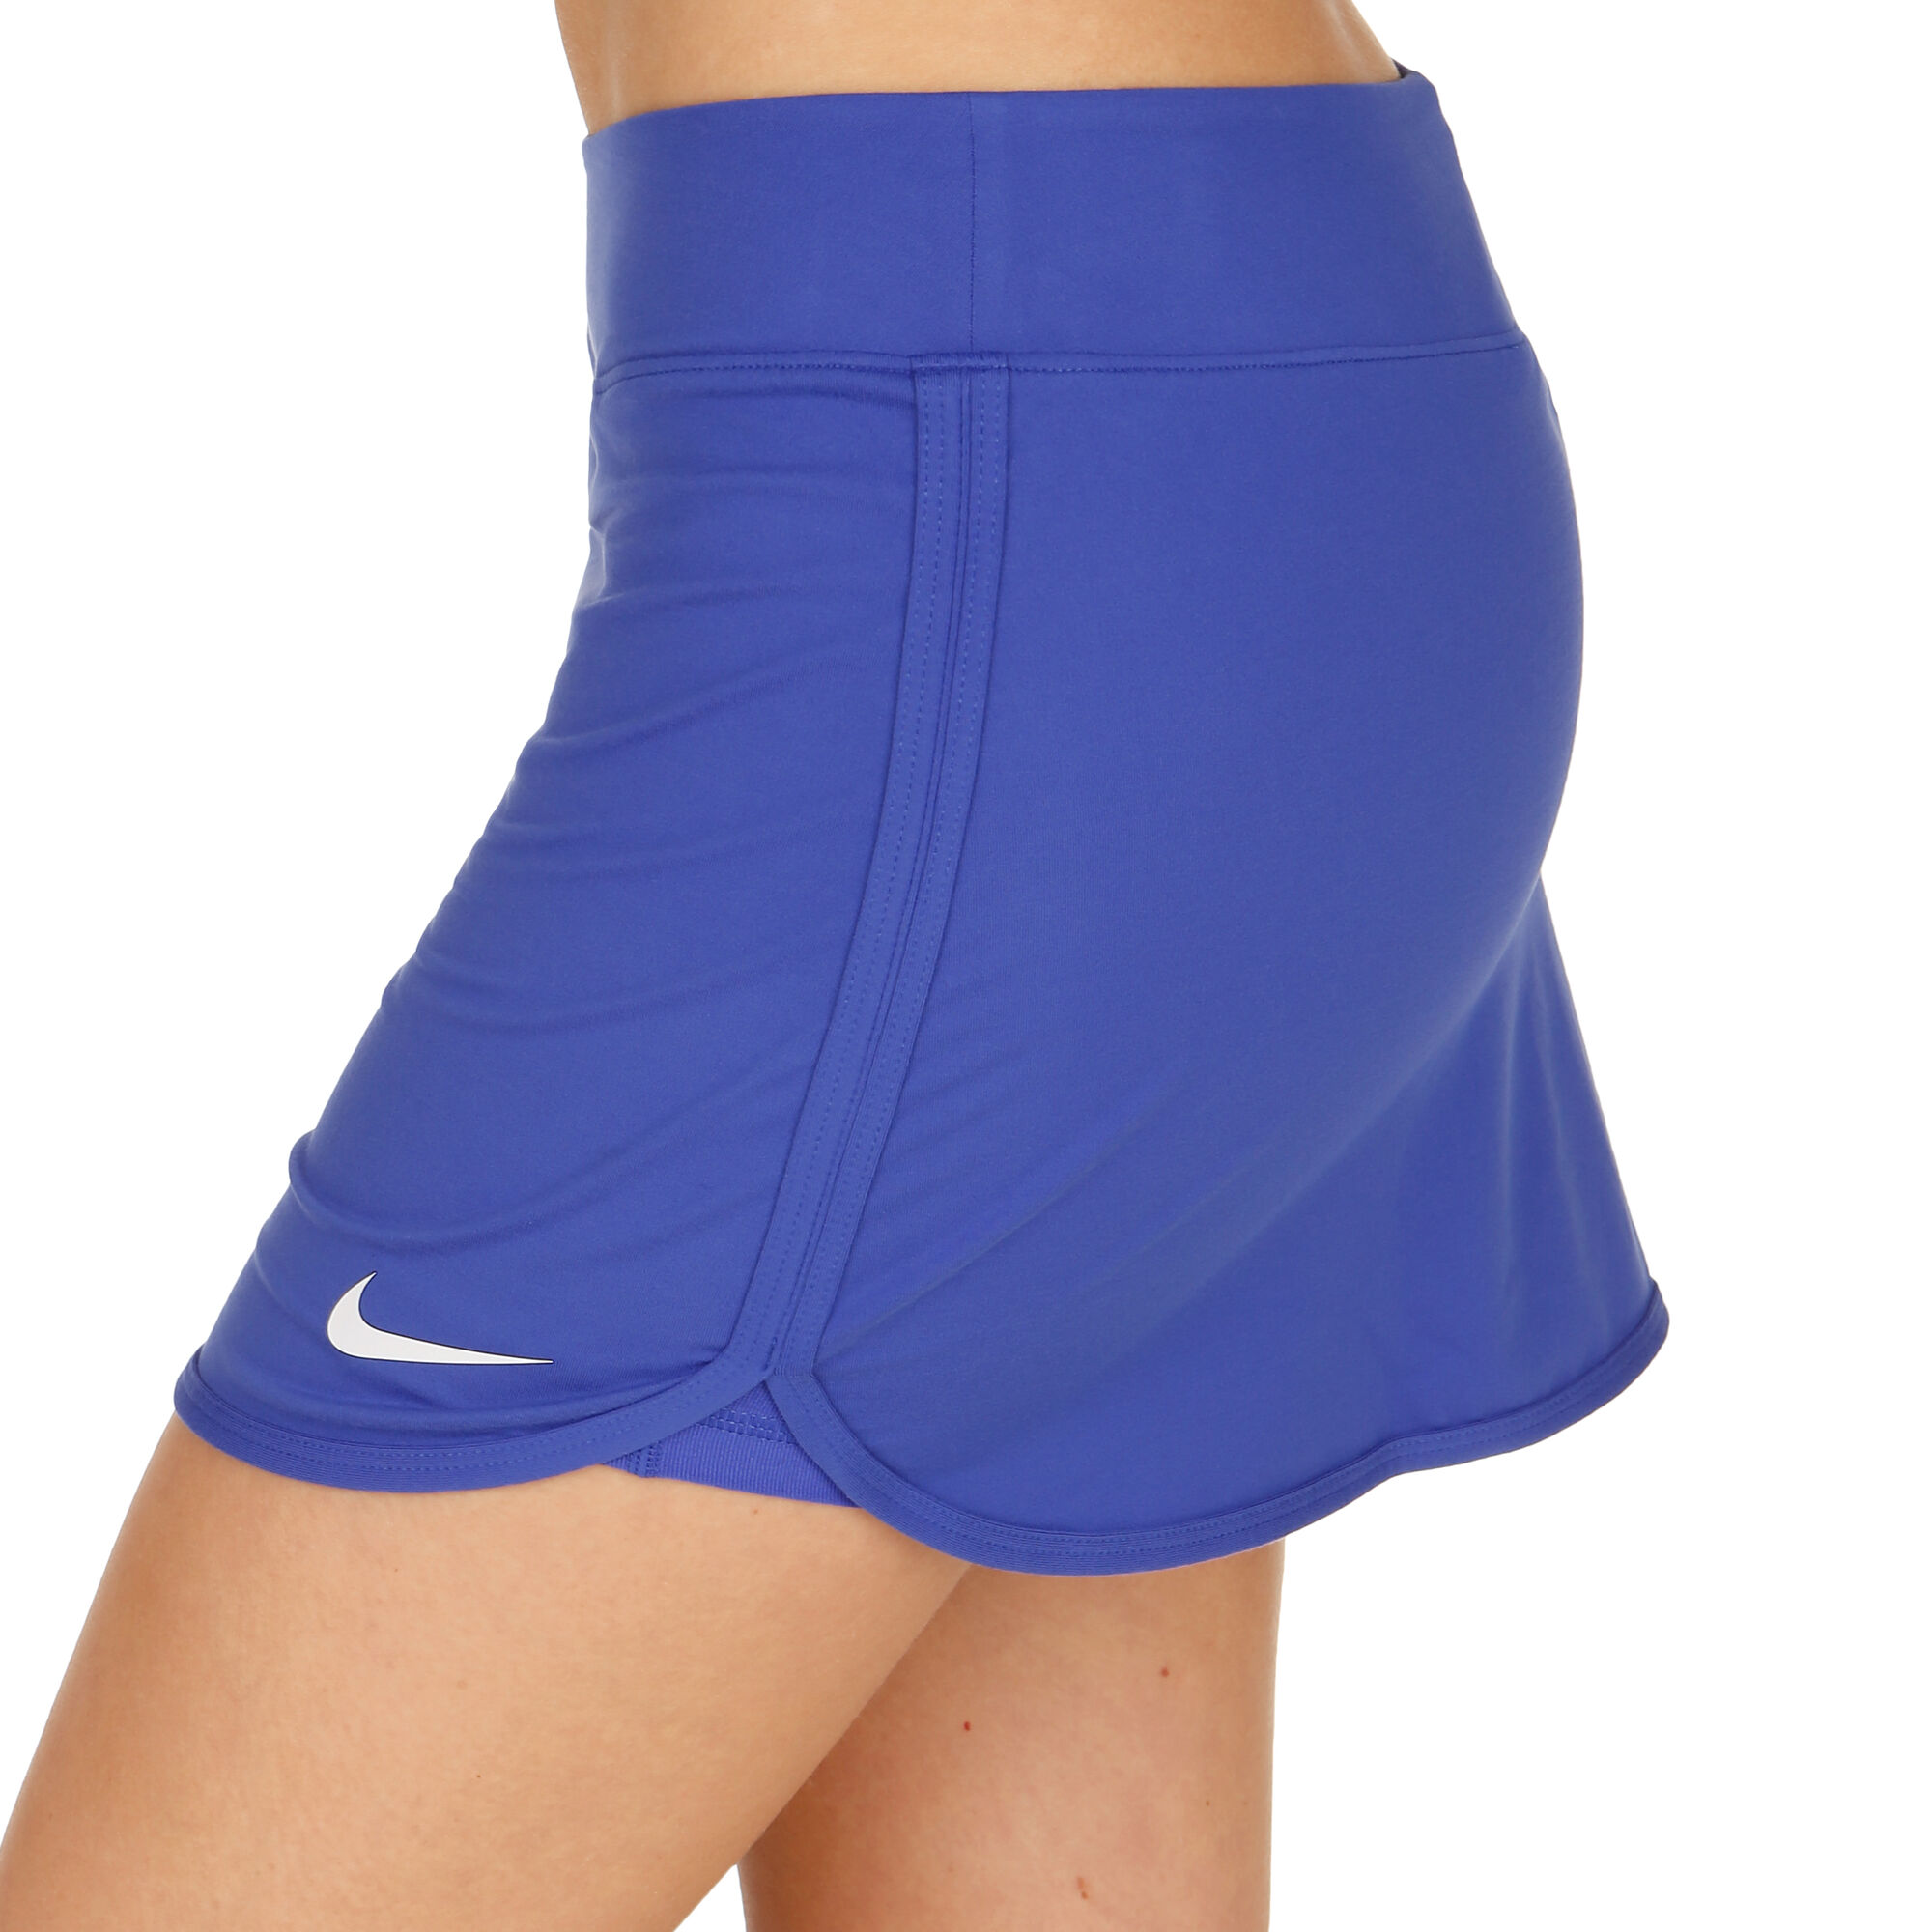 Intestinos Polo oído Nike Court Pure Rock Damen - Blau, Weiß online kaufen | Tennis-Point